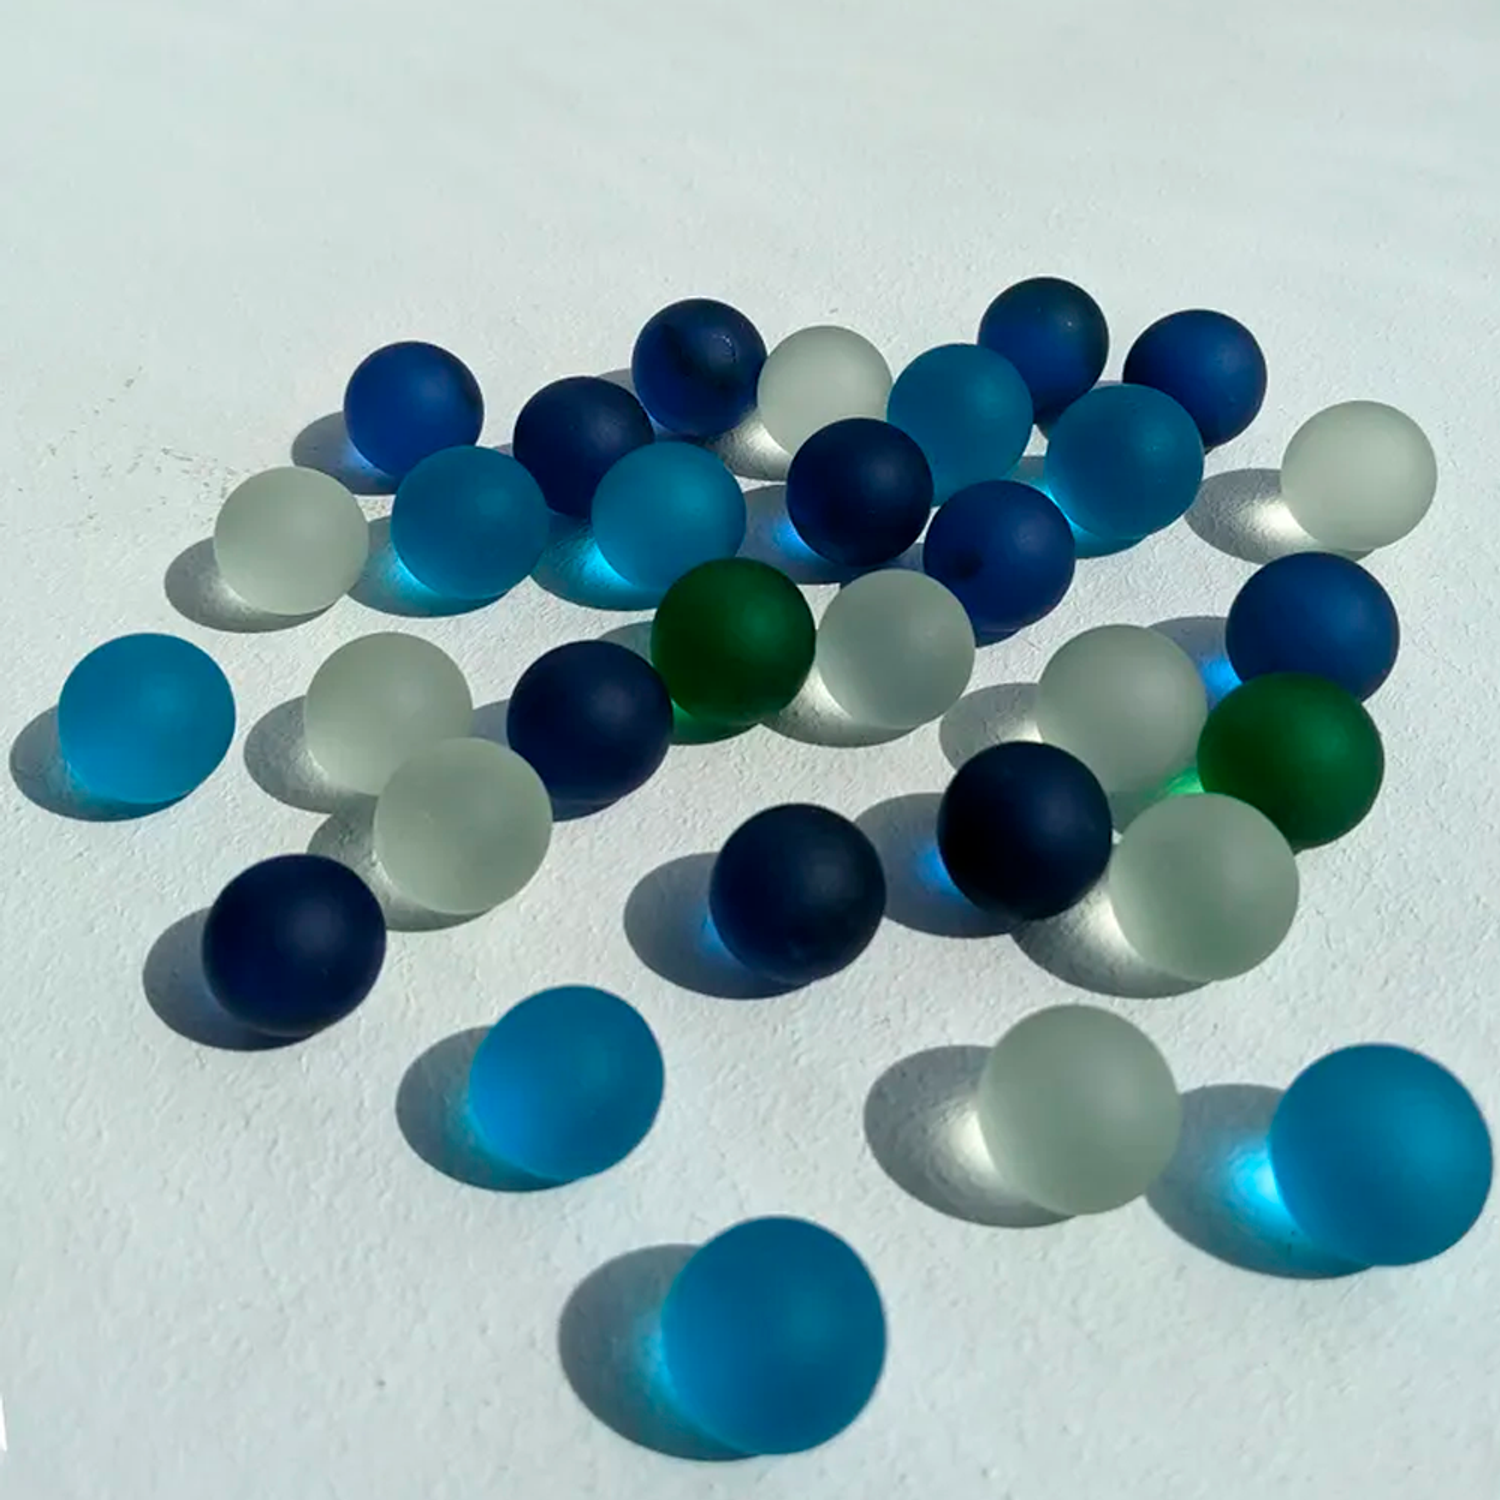 Стеклянные шарики Riota камешки марблс грунт стеклянный Матовые прозрачные Голубые синие белые зеленые 16 мм 30 шт - фото 1